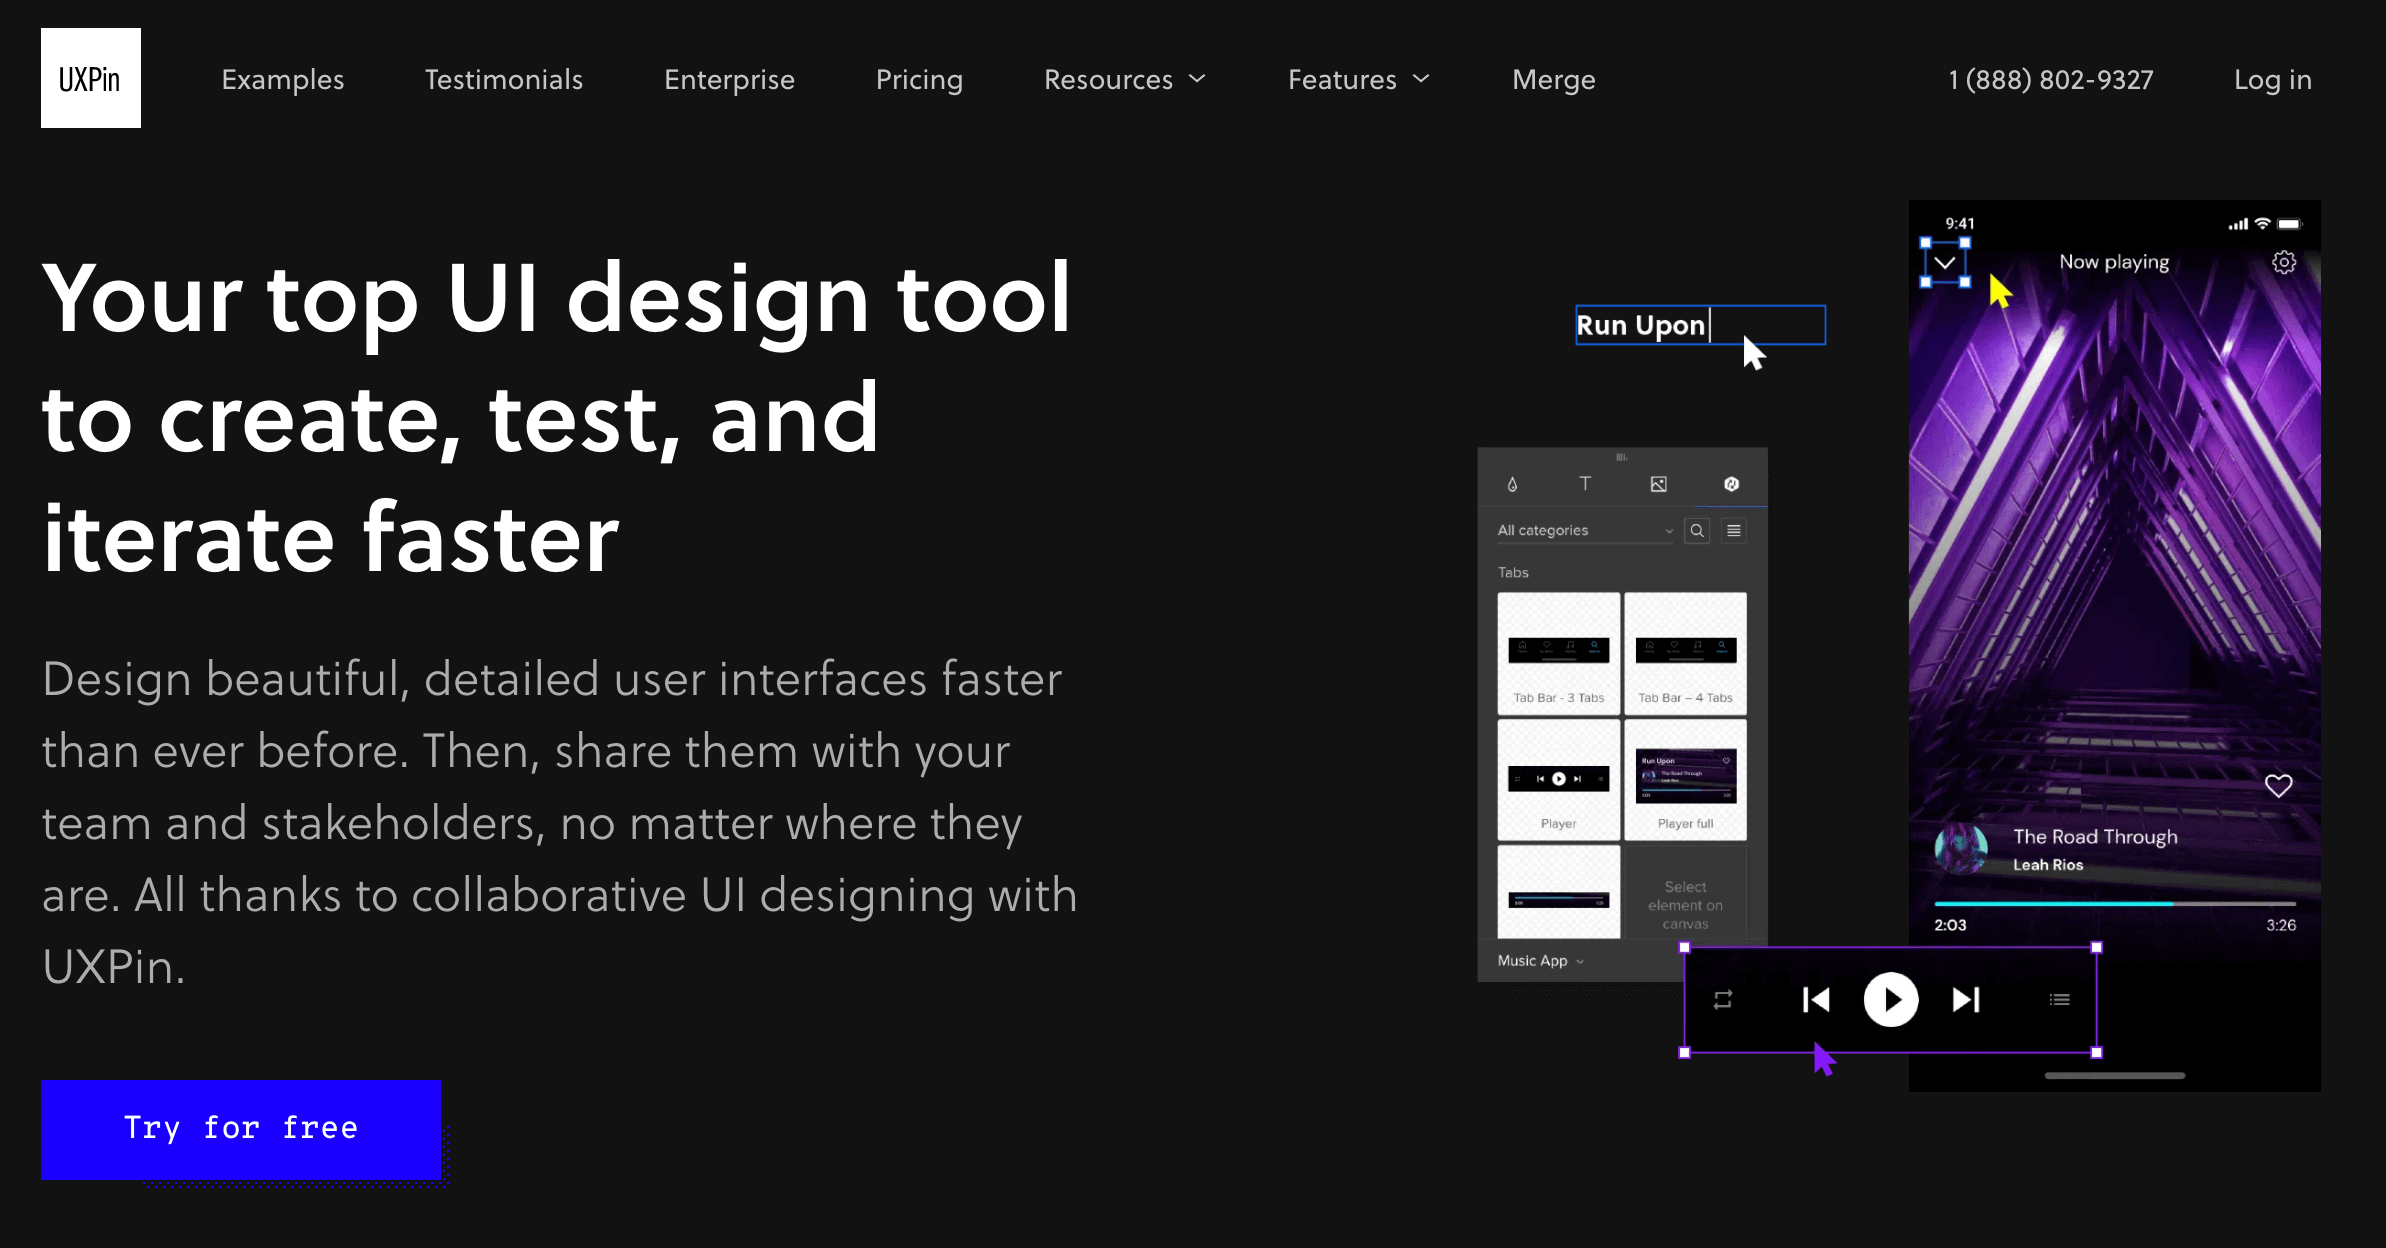 UXPin's UI design tool website